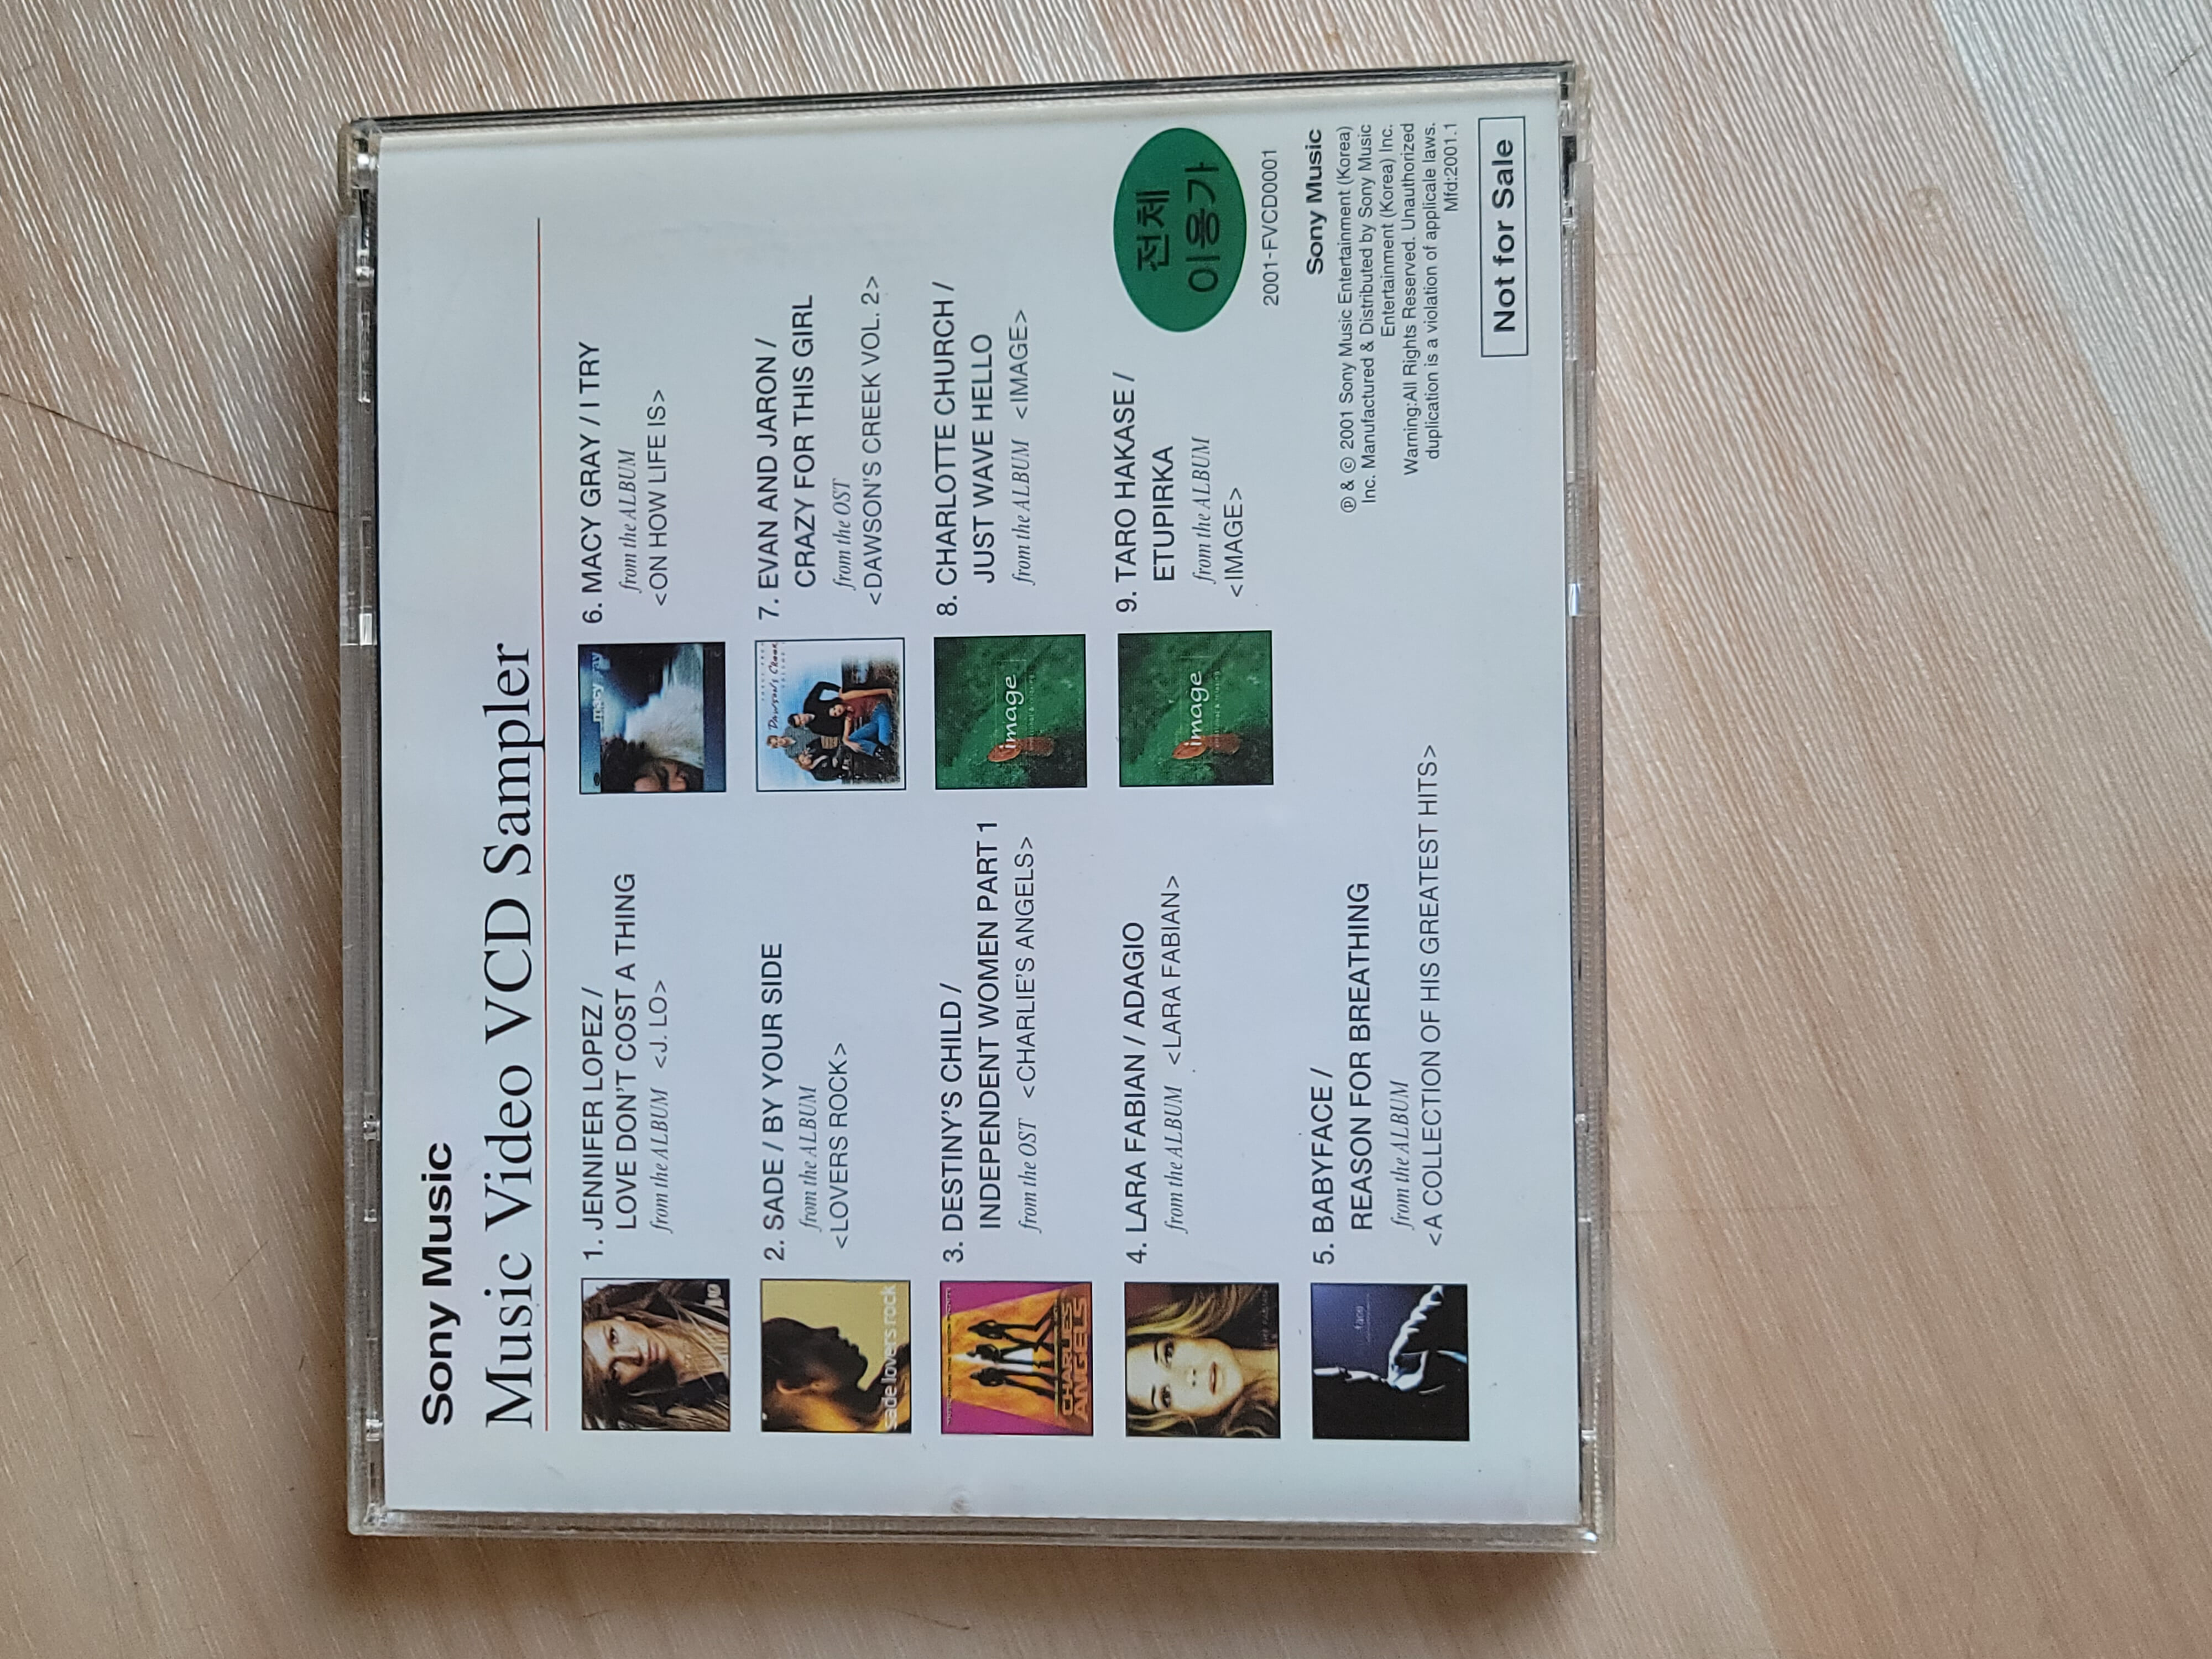 Sony Music Music VCD Sampler